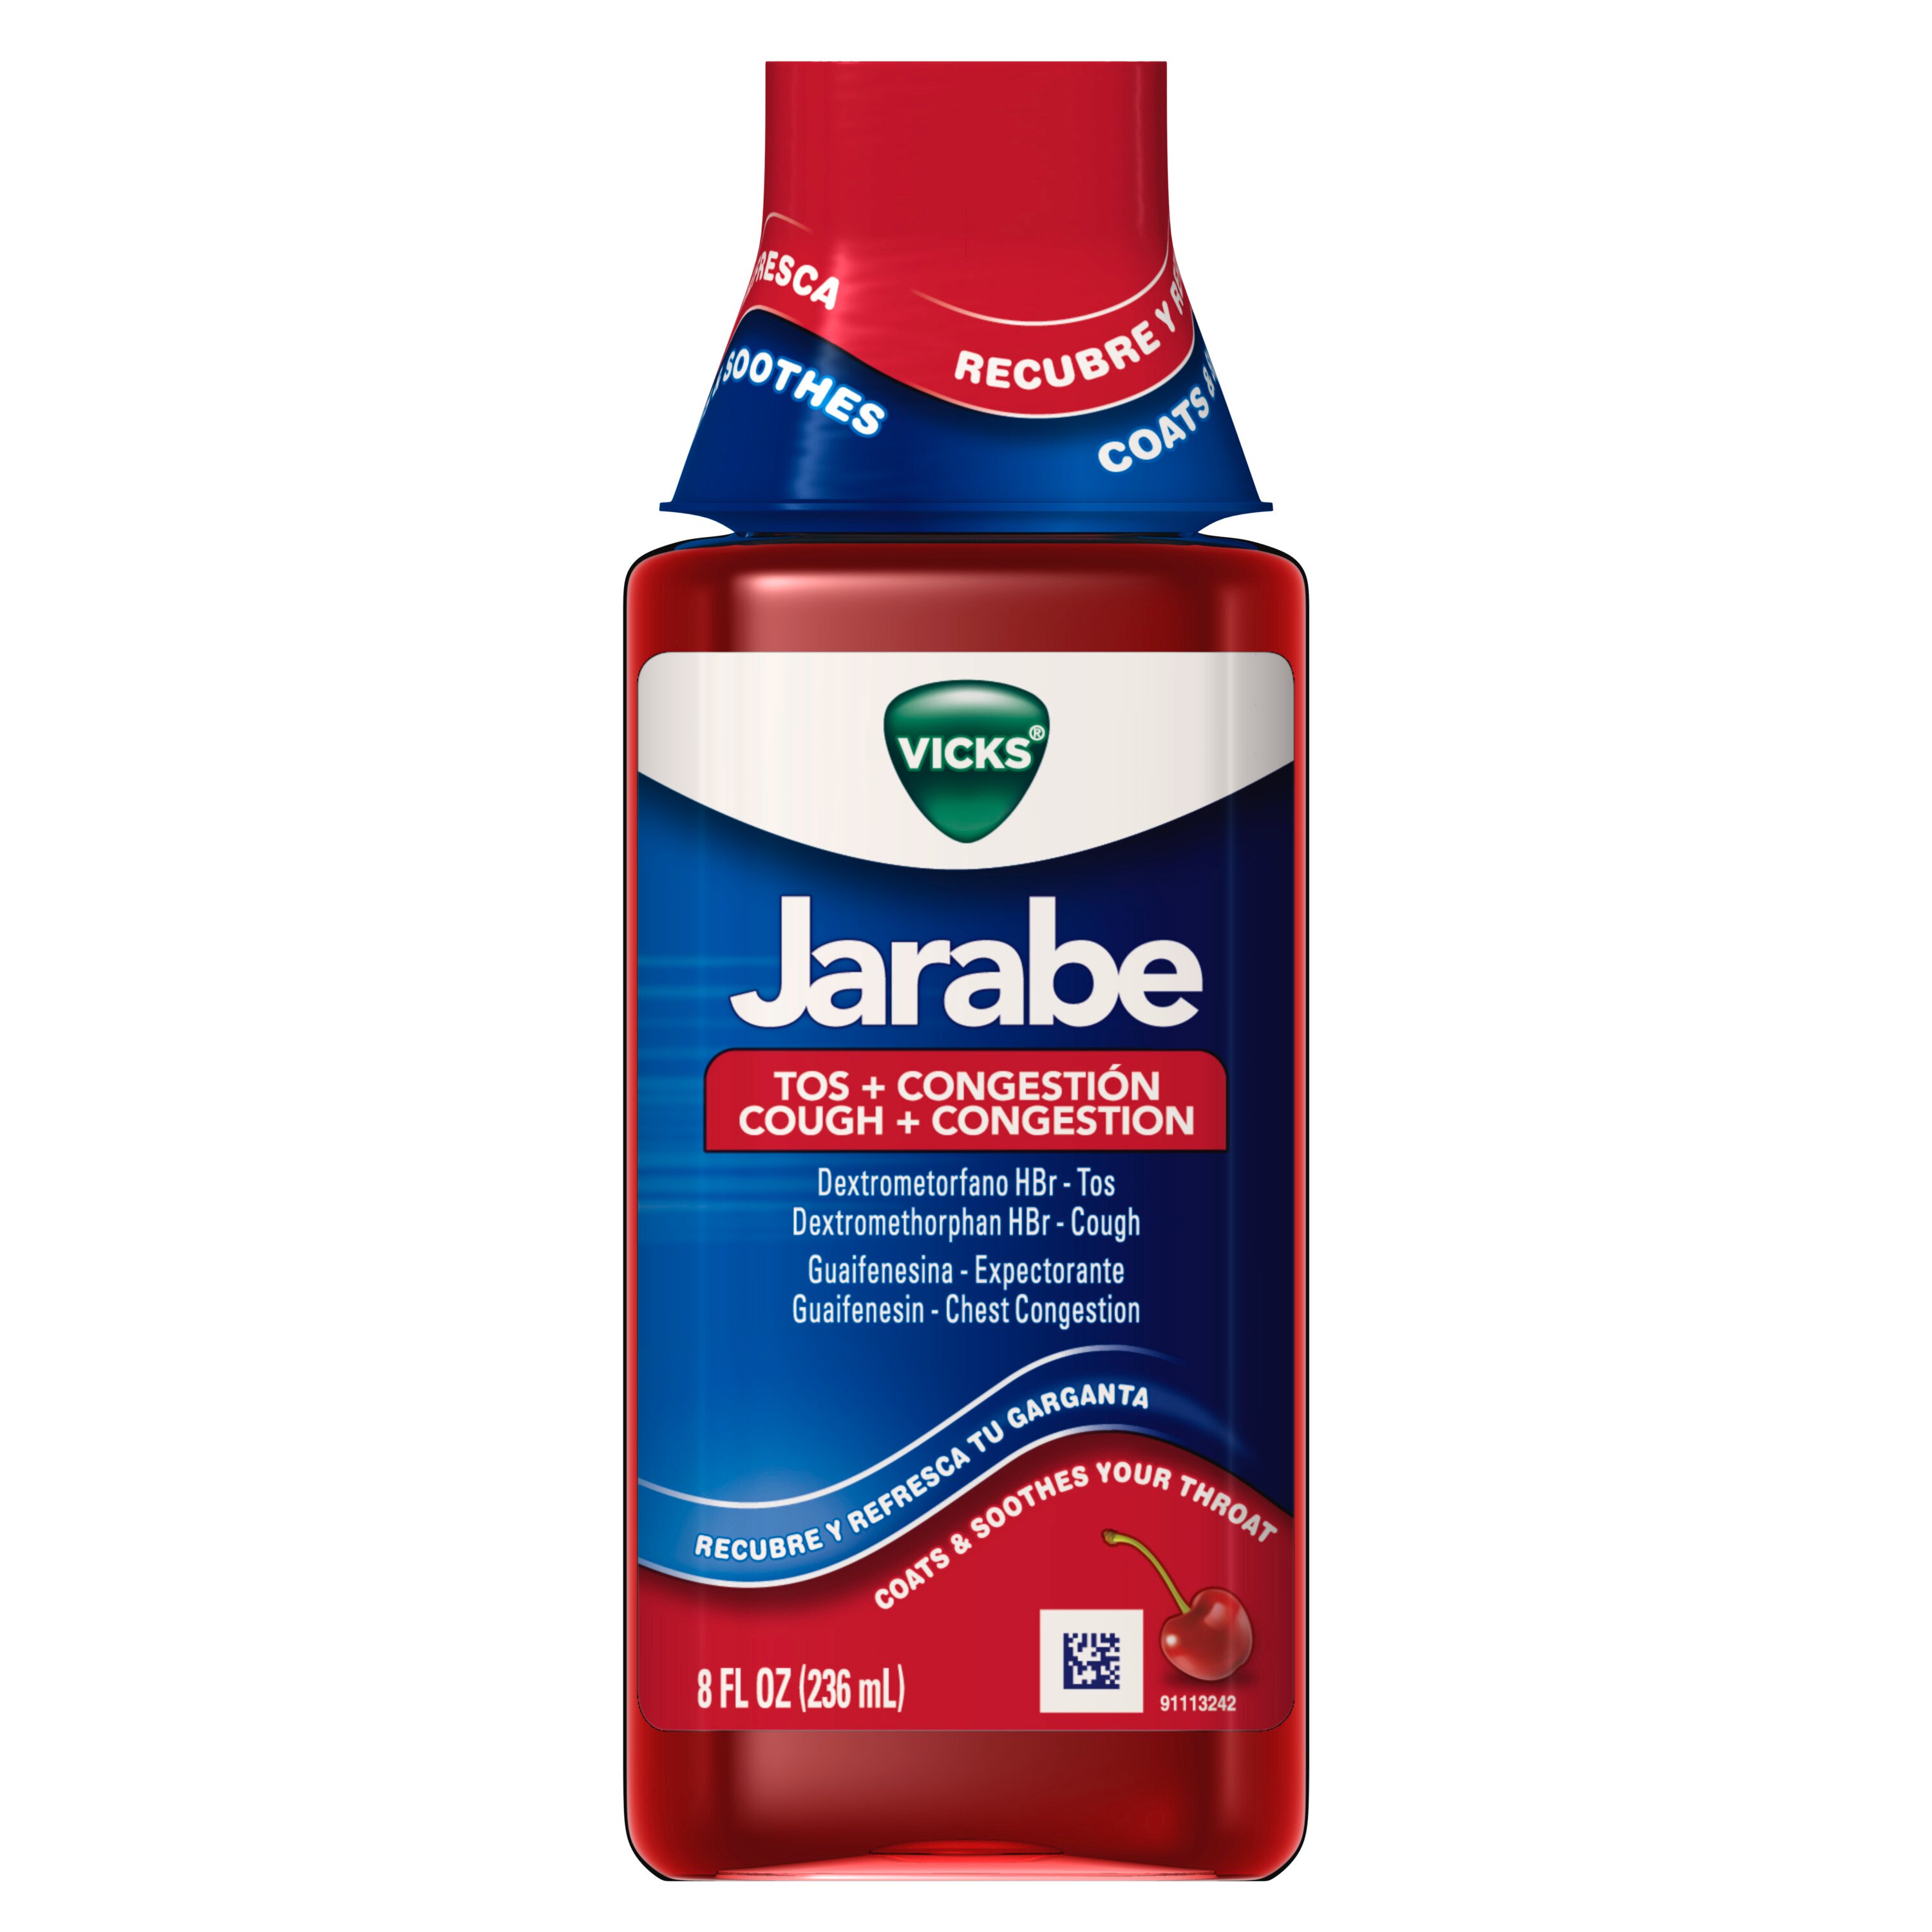 Vicks - Jarabe para la tos y congestión, sabor Cherry, 8 oz